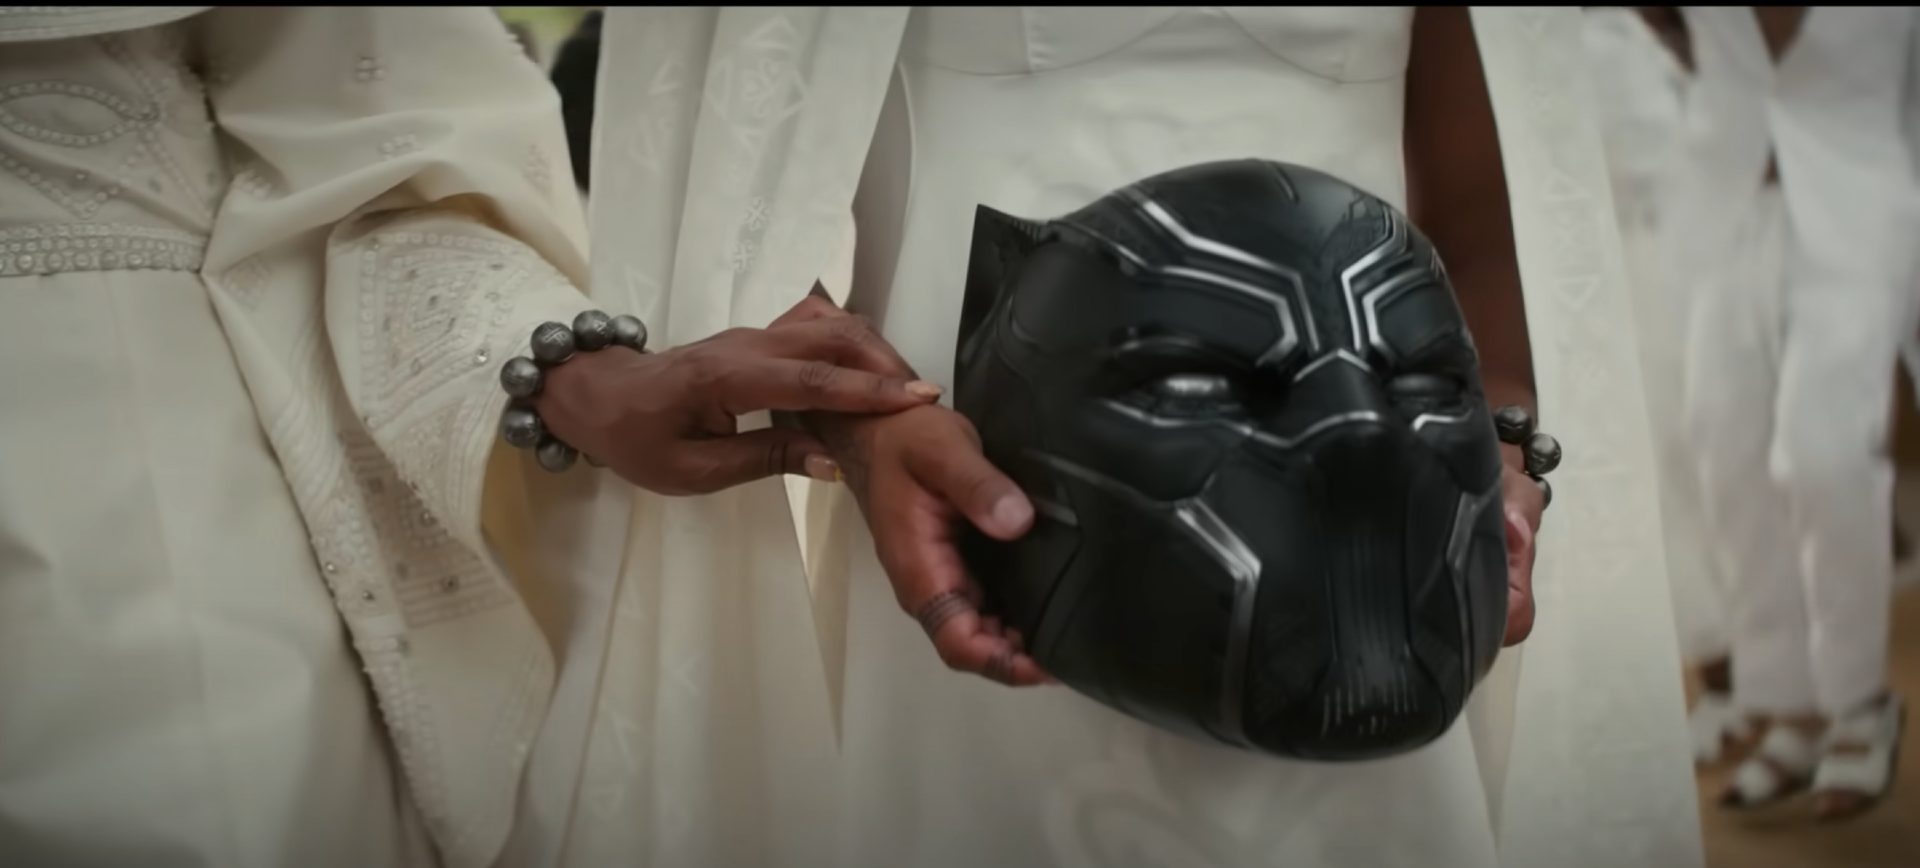 Mãos seguram o capacete do Pantera Negra, em uma cena do longa Pantera Negra: Wakanda Para Sempre